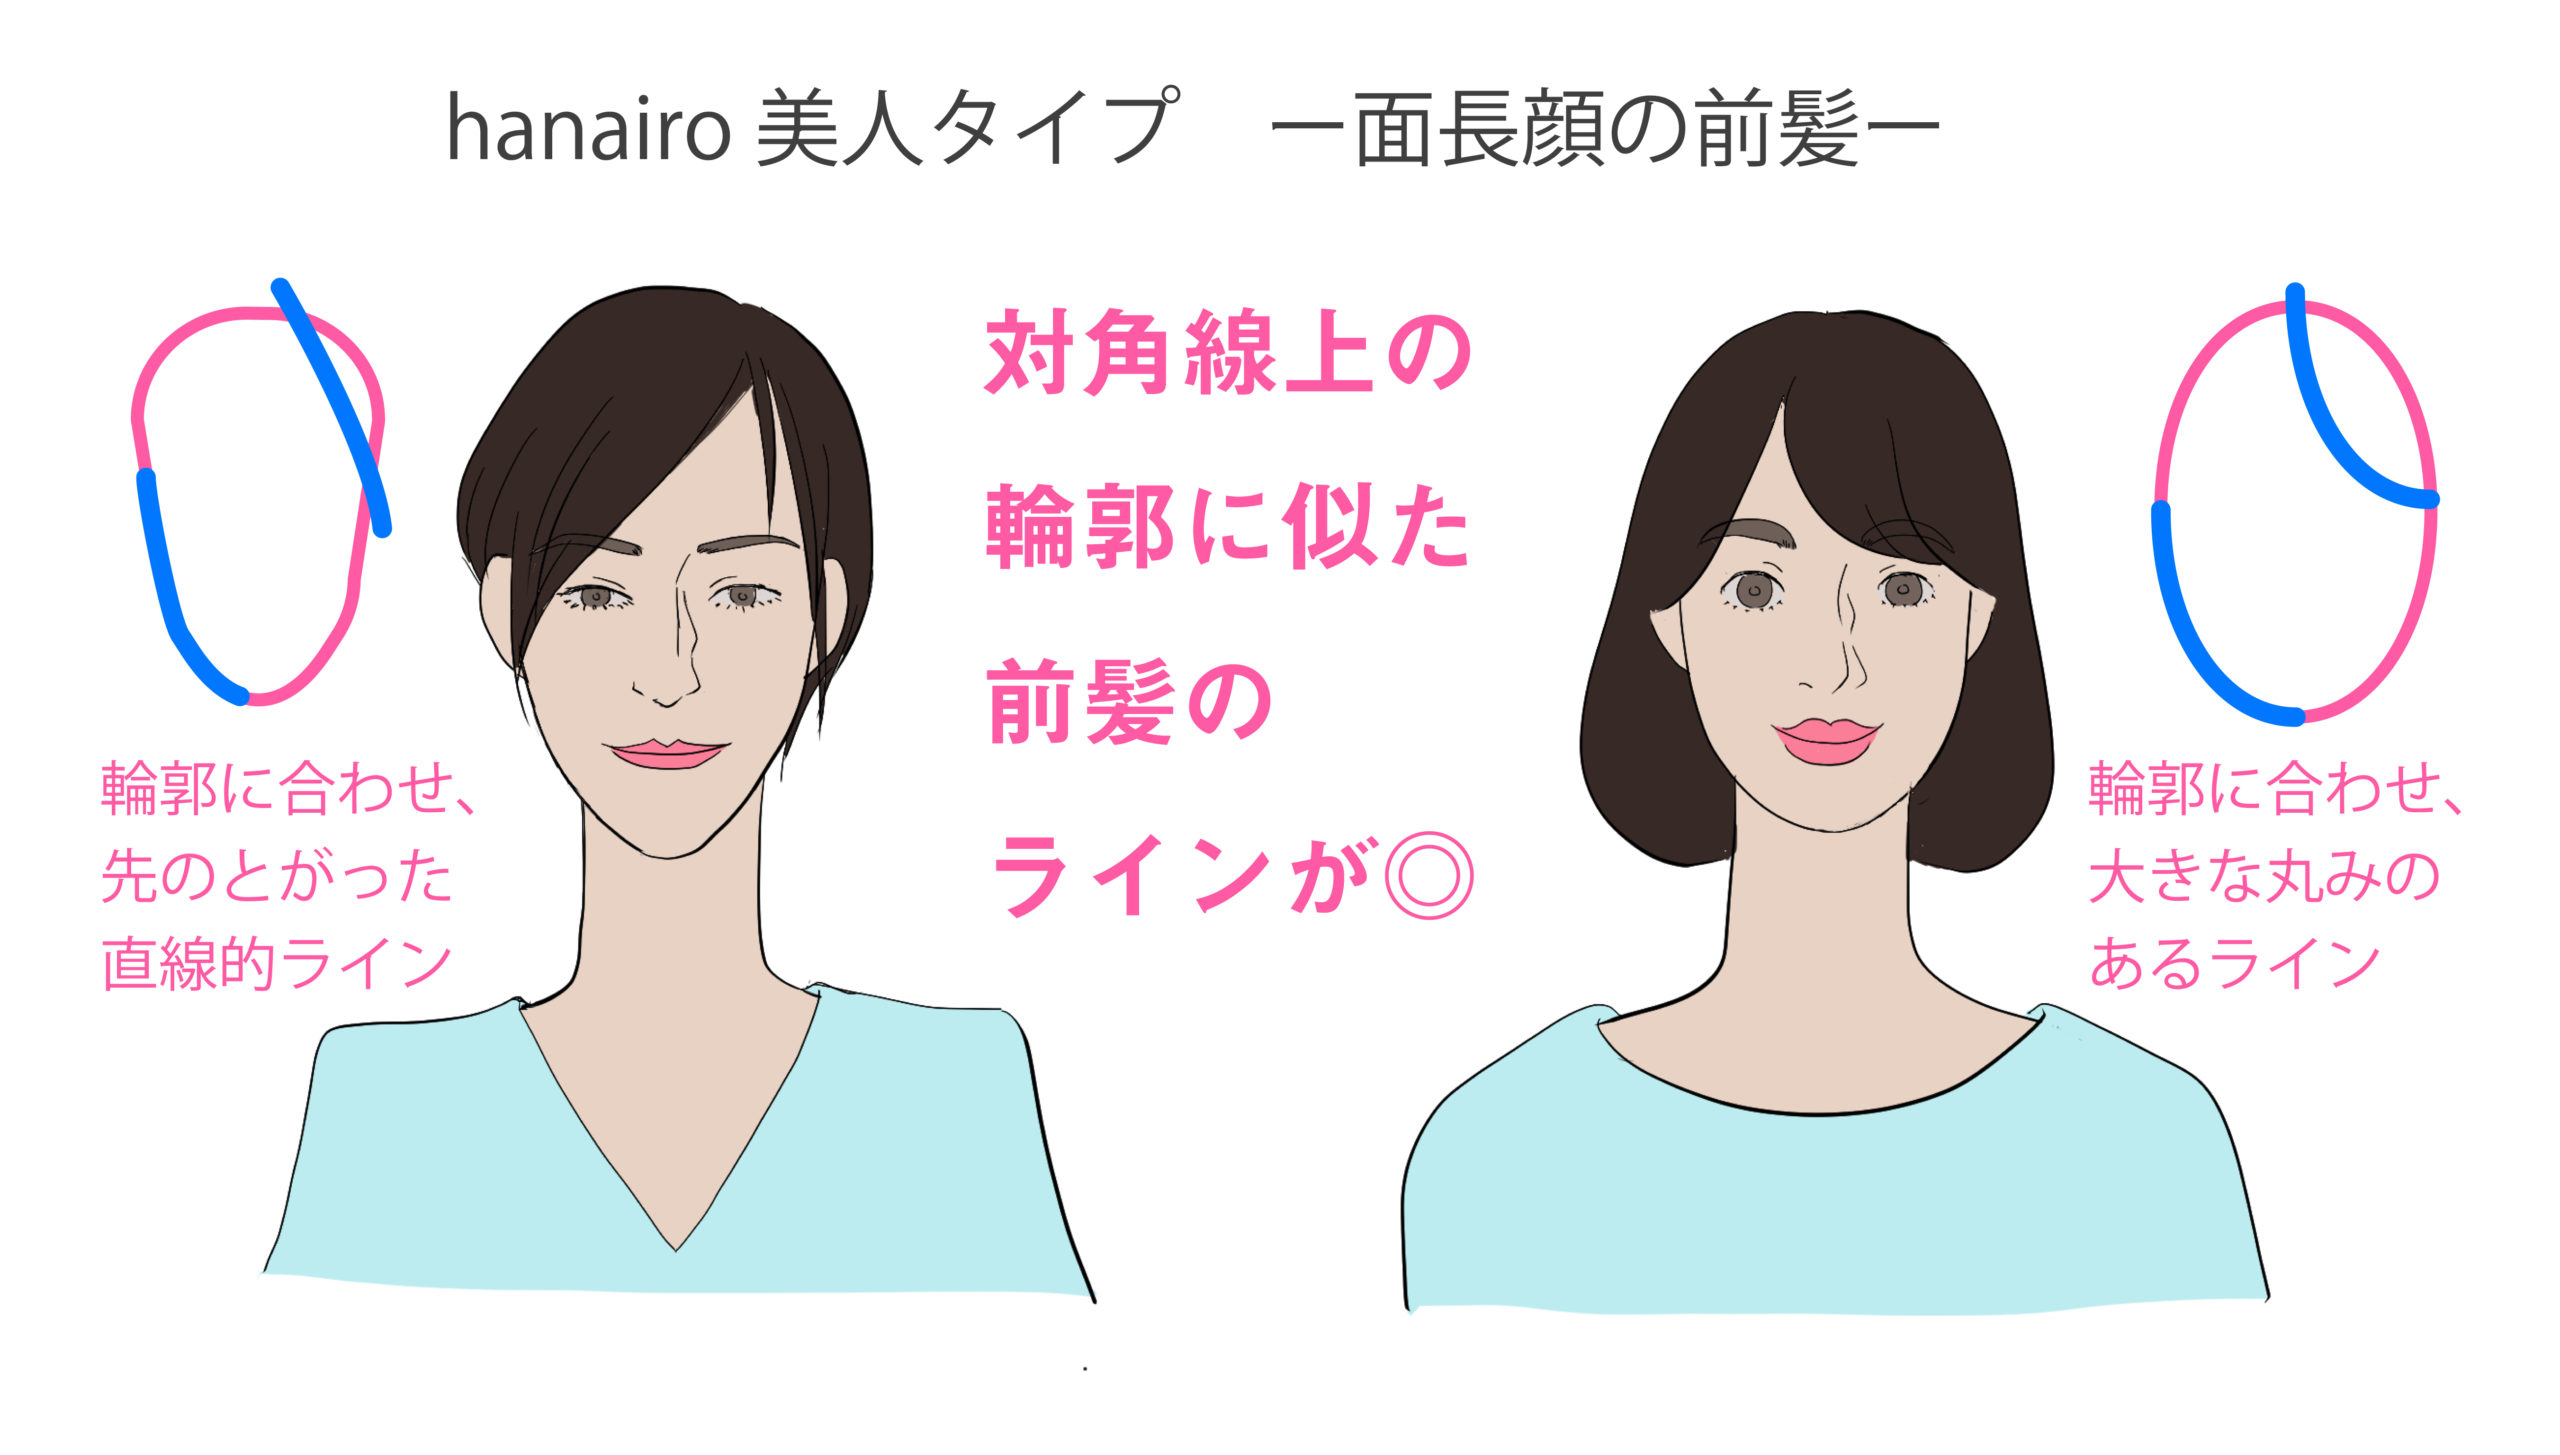 Hanairo美人タイプ 輪郭と似合う髪型 東京 新宿 パーソナルスタイリングhanairo 本来の自分の魅力を知るサロン